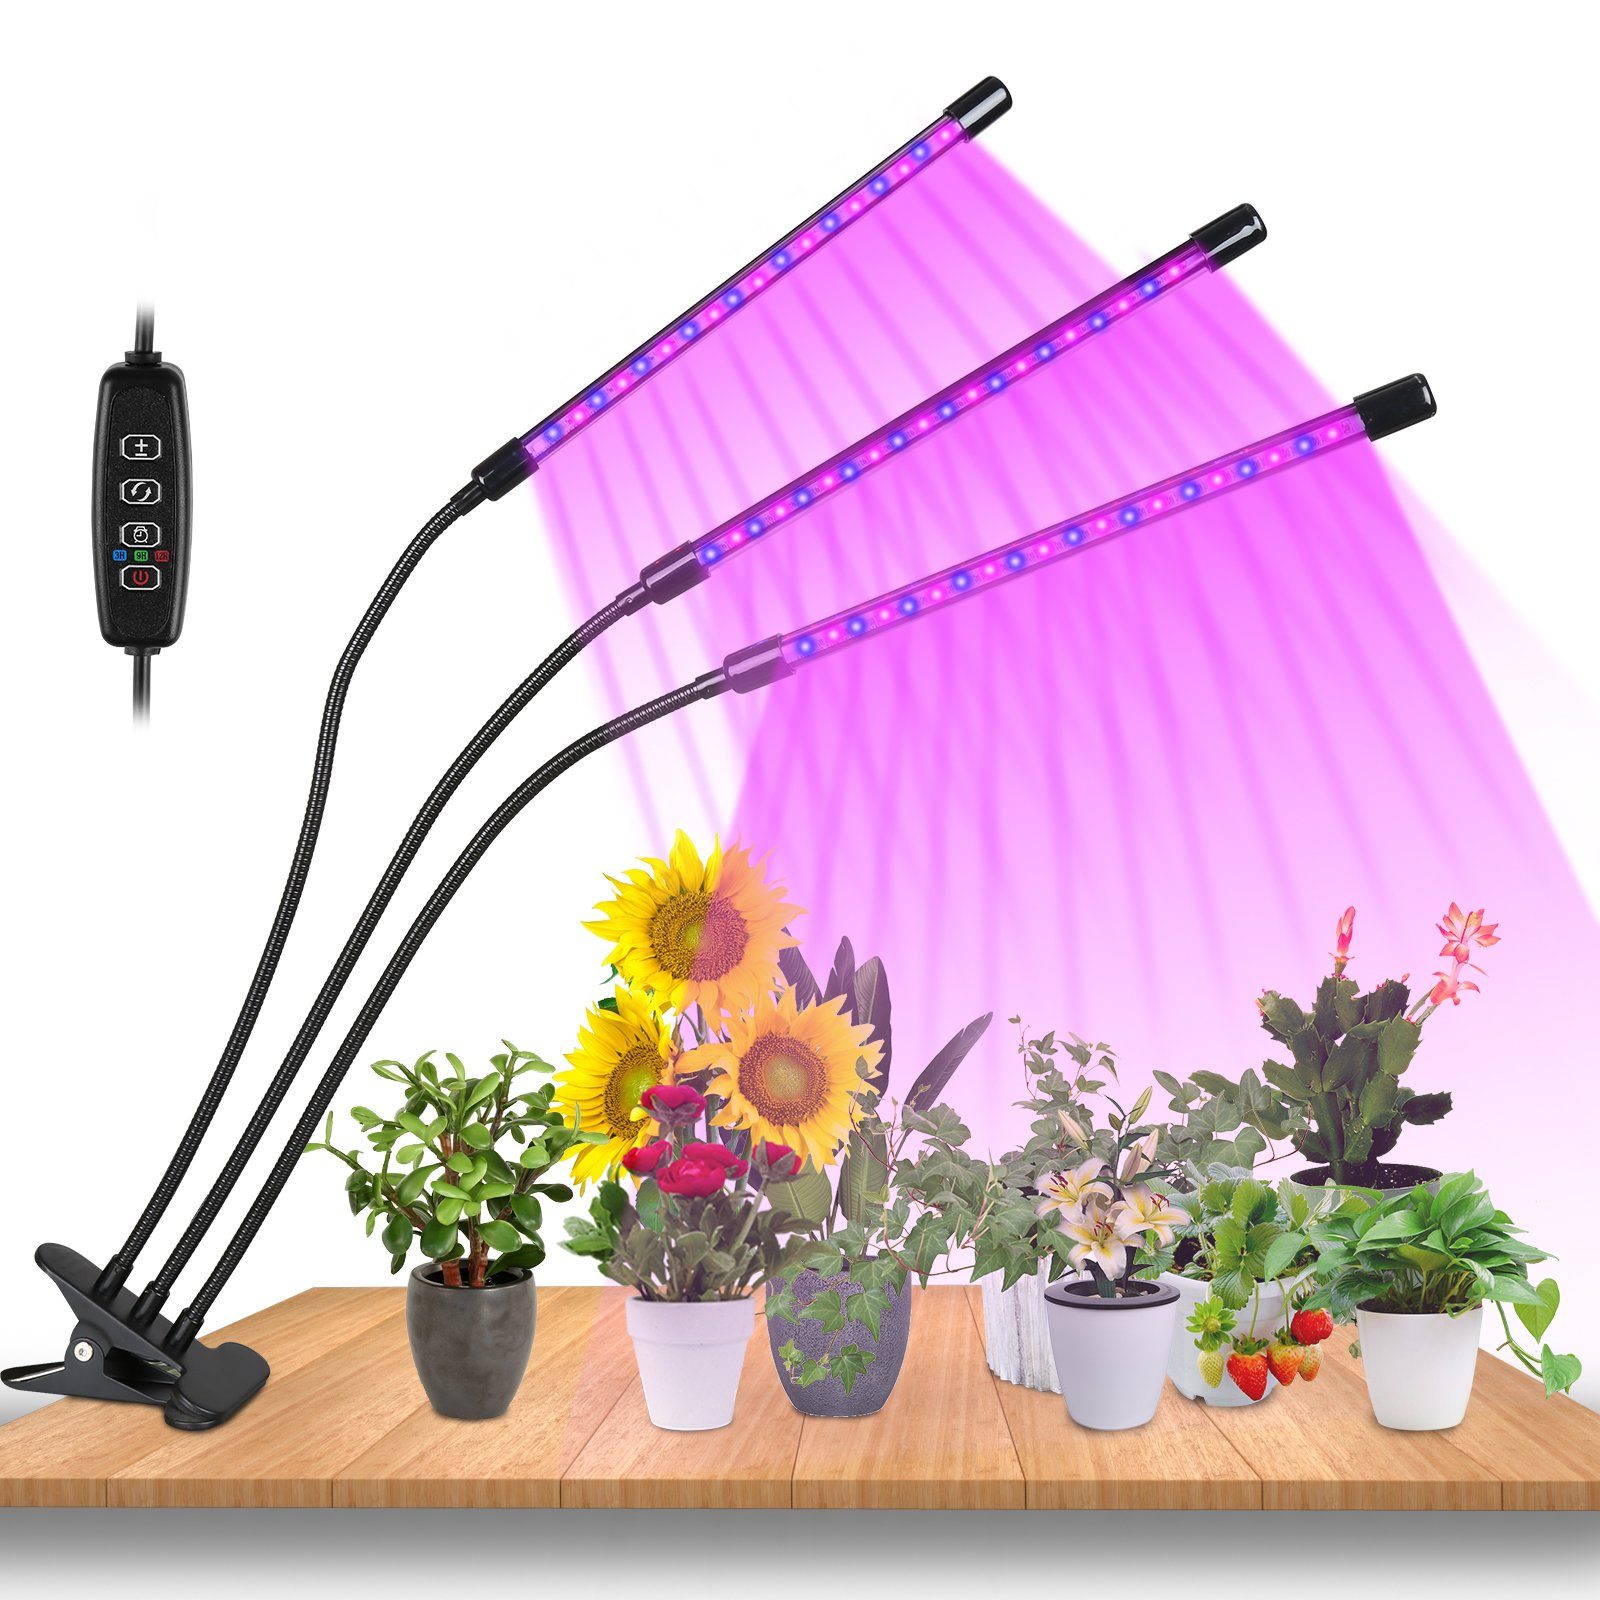 Lospitch Pflanzenlampe LED Pflanzenlicht 30W Dimmbar Vollspektrum 3 Kopf Wachstumslampe, Grow Light mit 3 Licht Modus, 10 Helligkeitsstufen | Pflanzenlampen